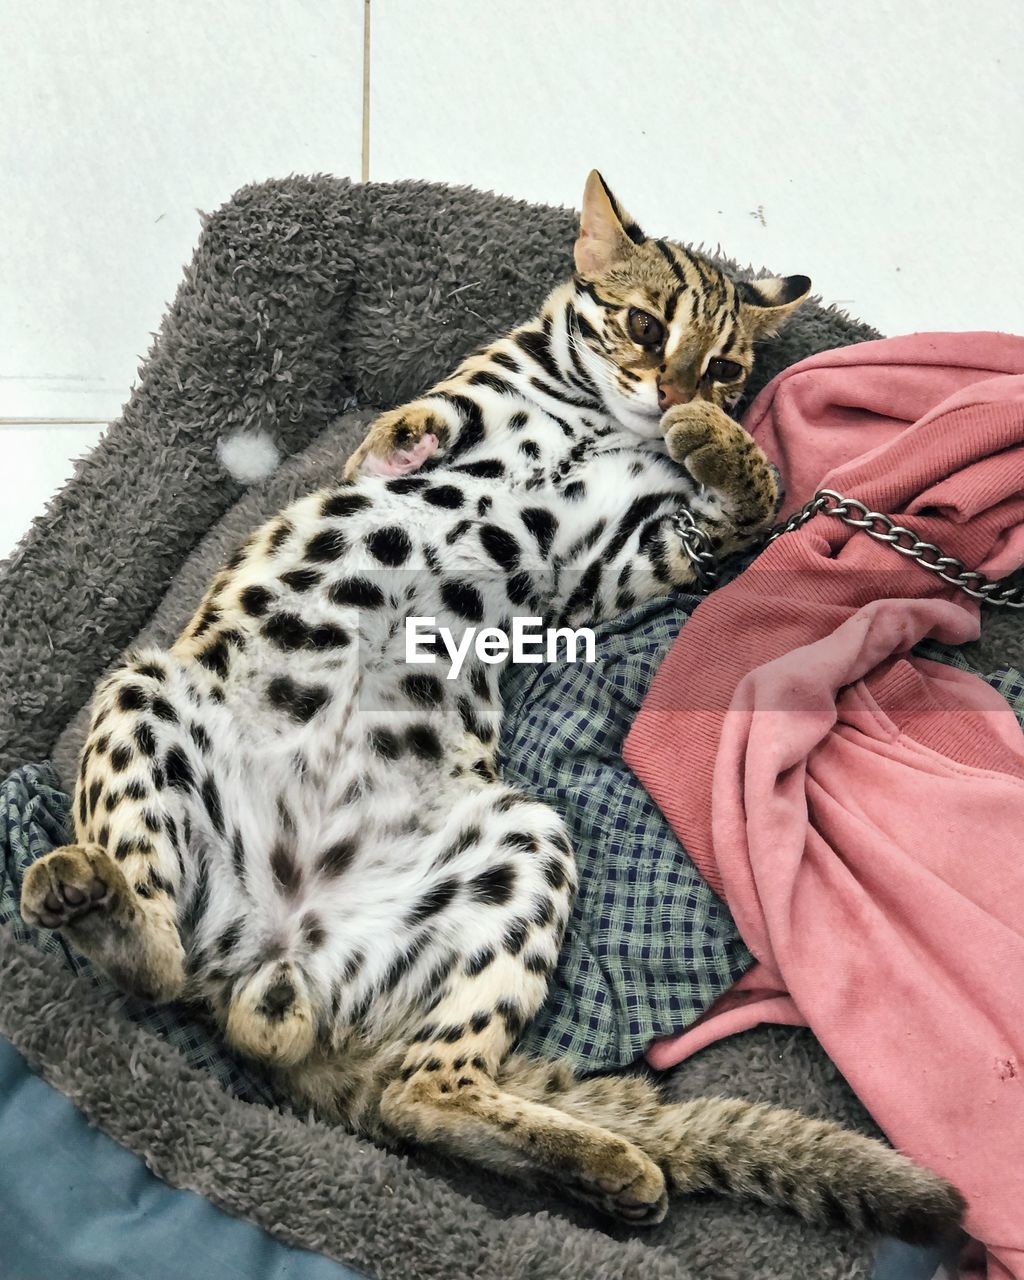 Cat sleeping on blanket